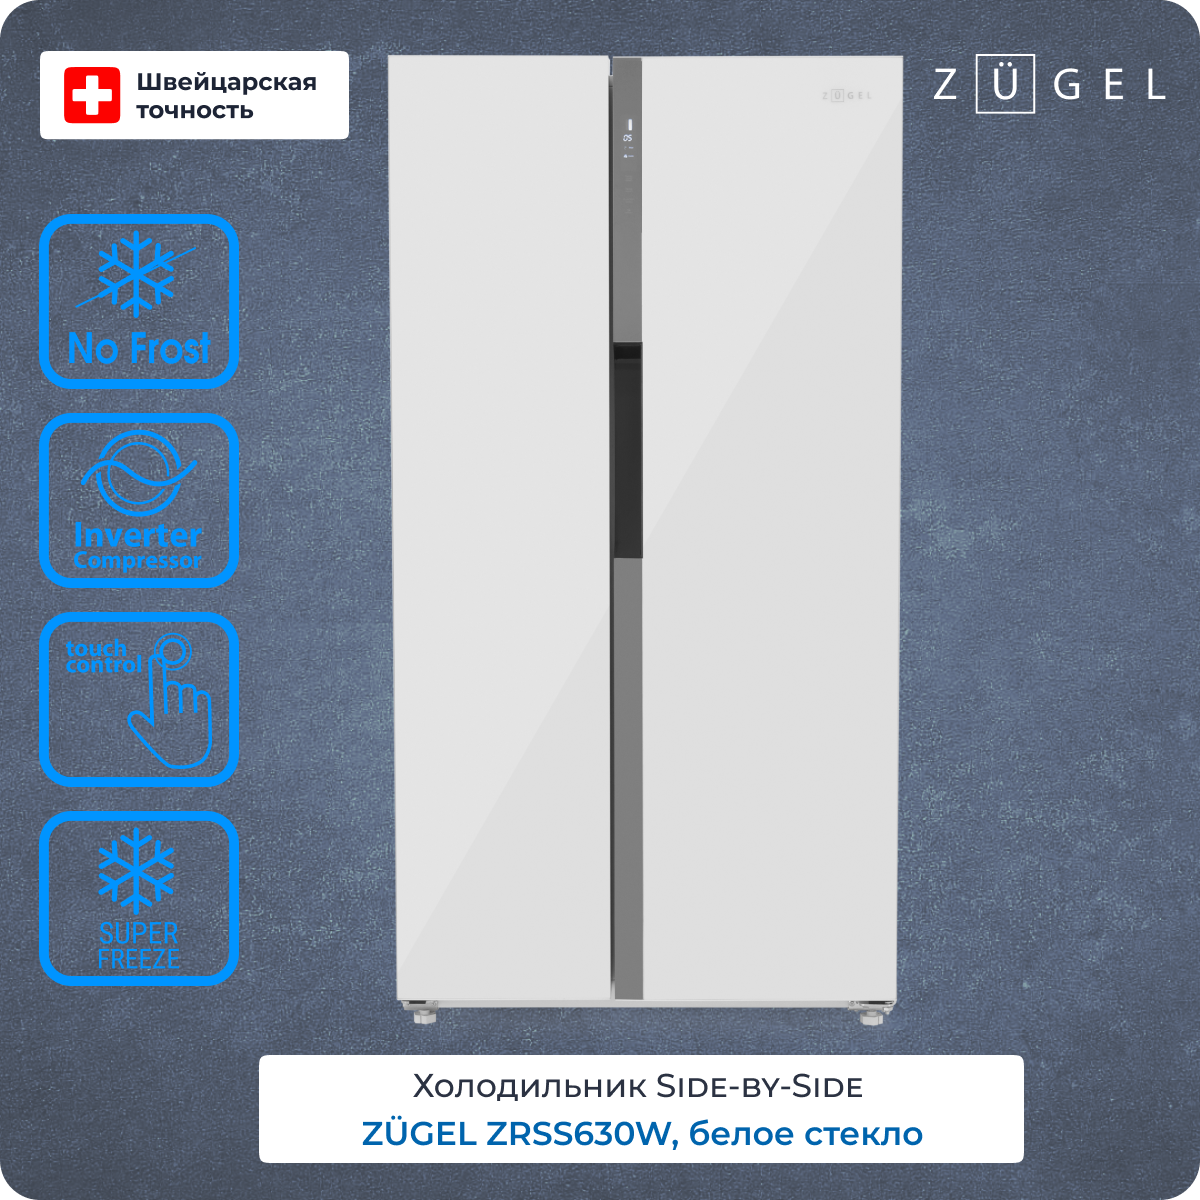 Холодильник ZUGEL ZRSS630W белый холодильник zugel zrss630w белый